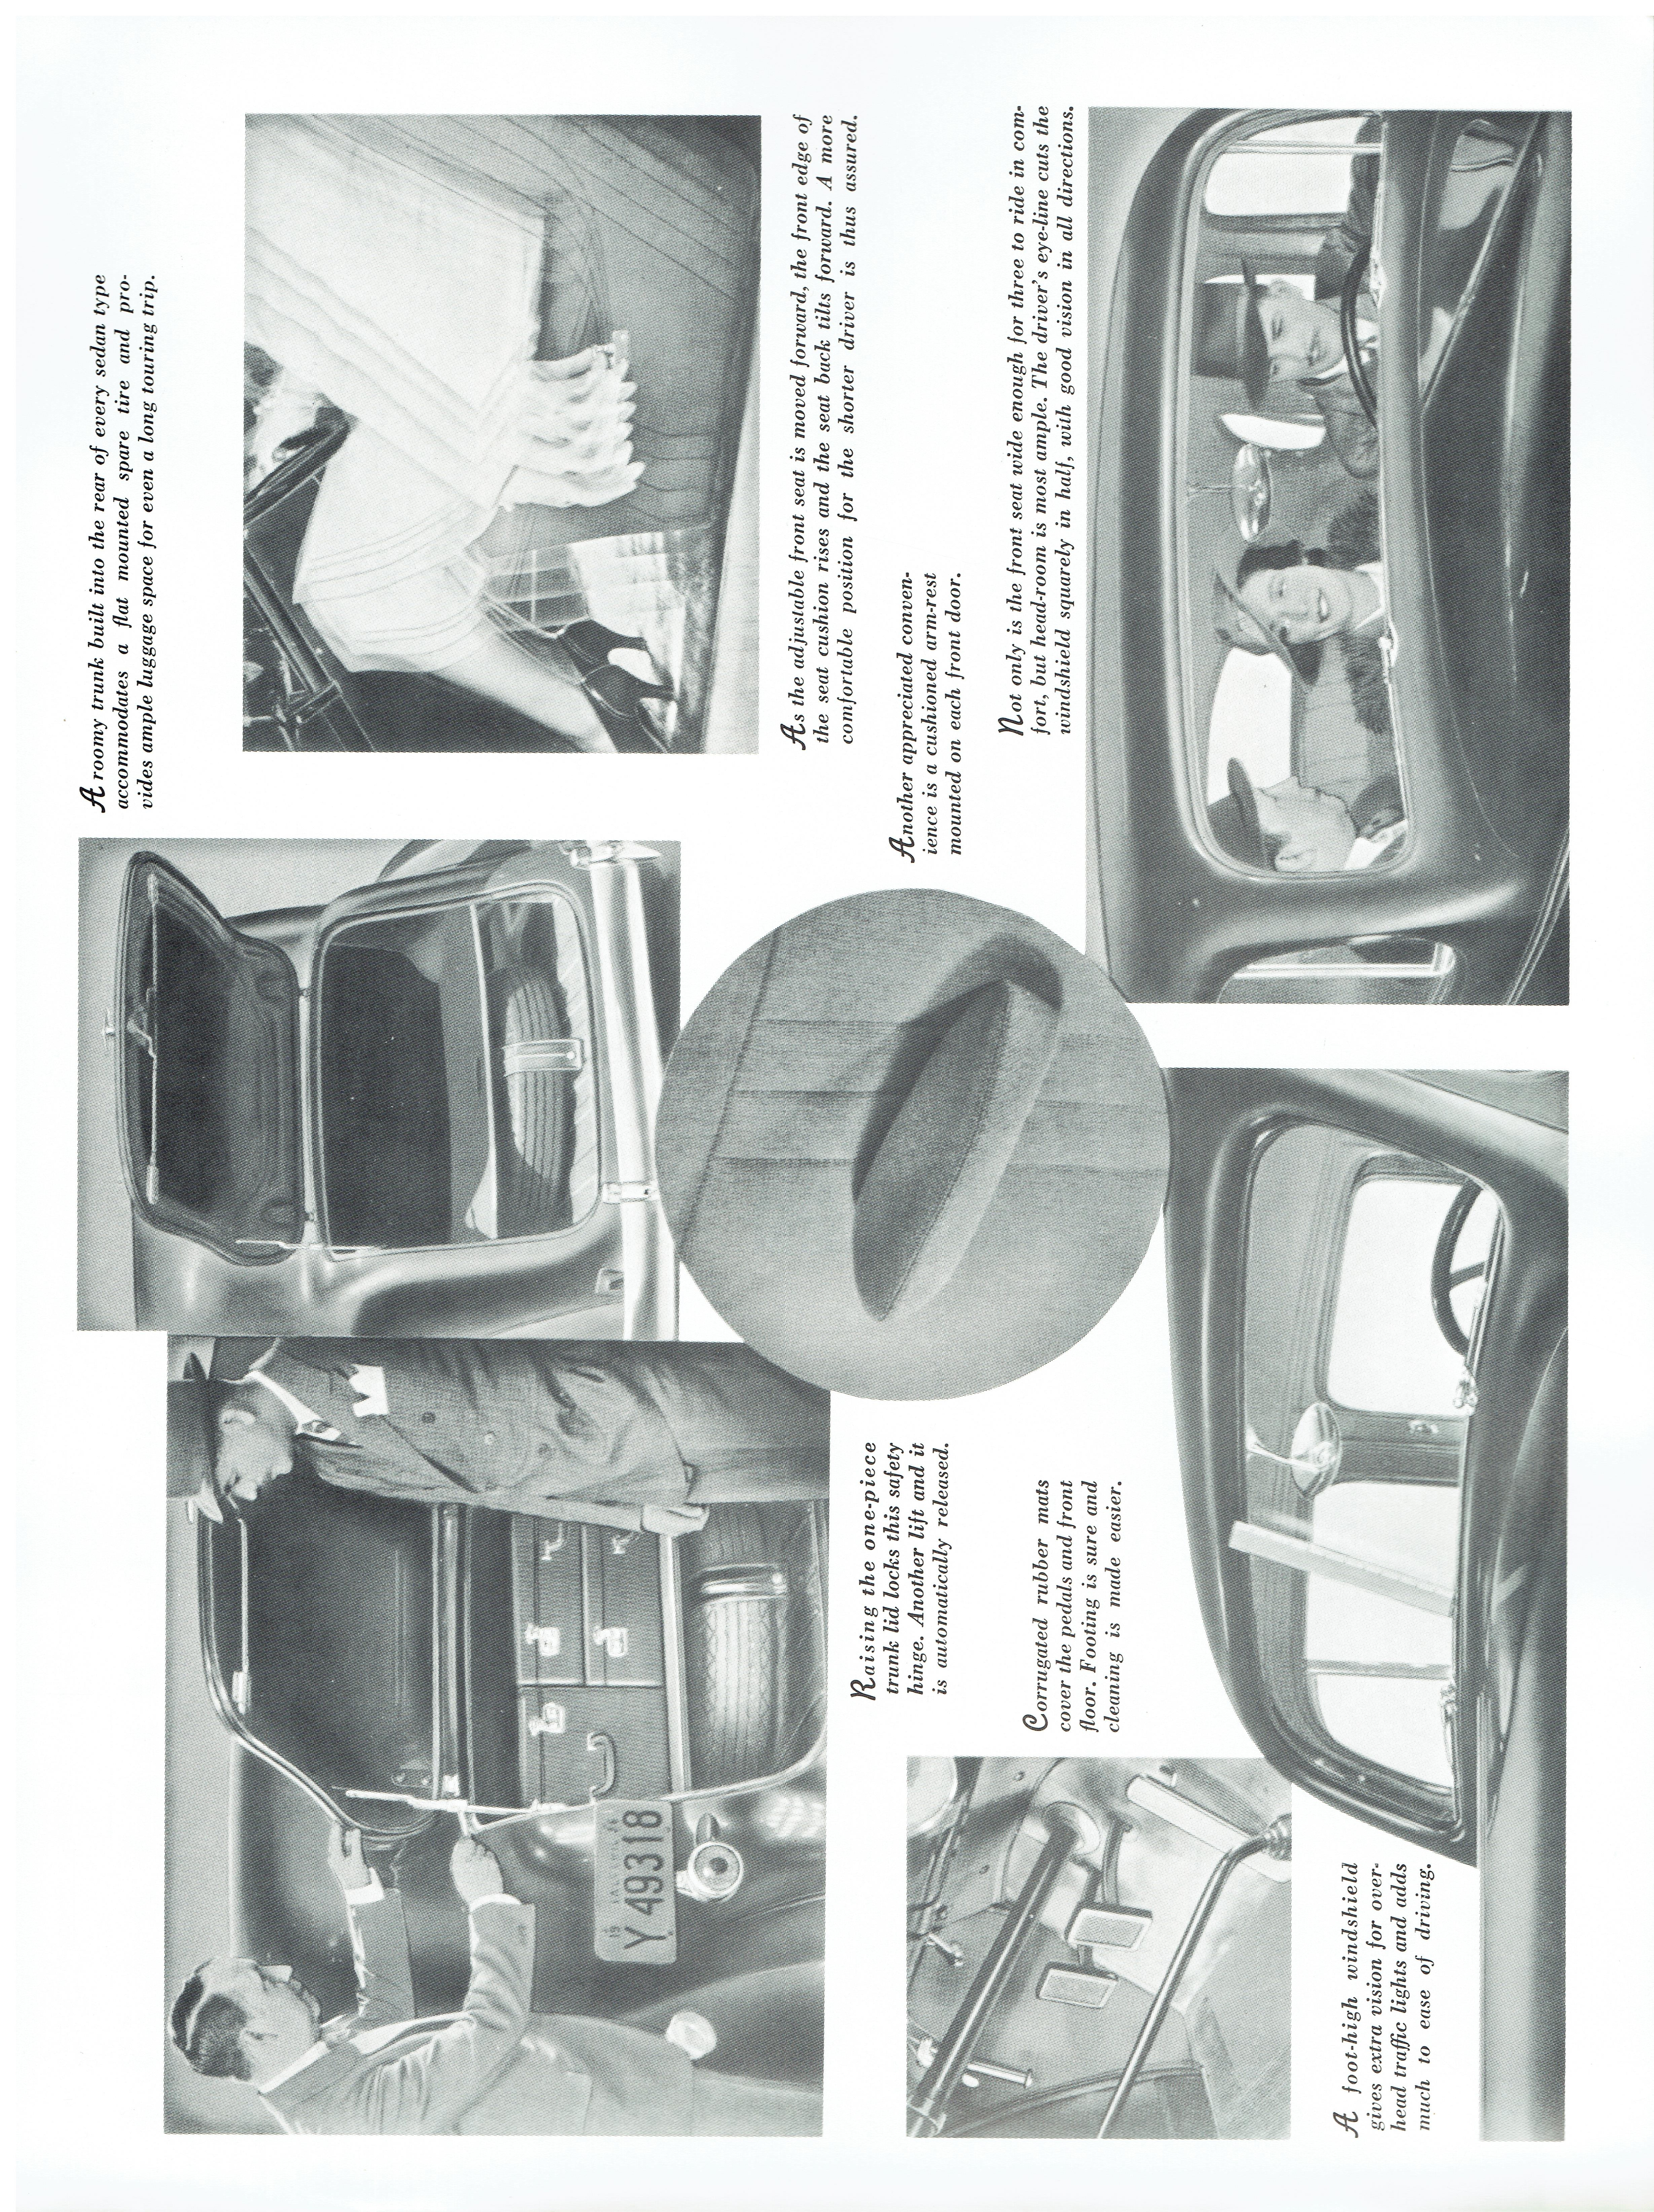 1937 Packard (27).jpg-2022-8-23 8.1.24